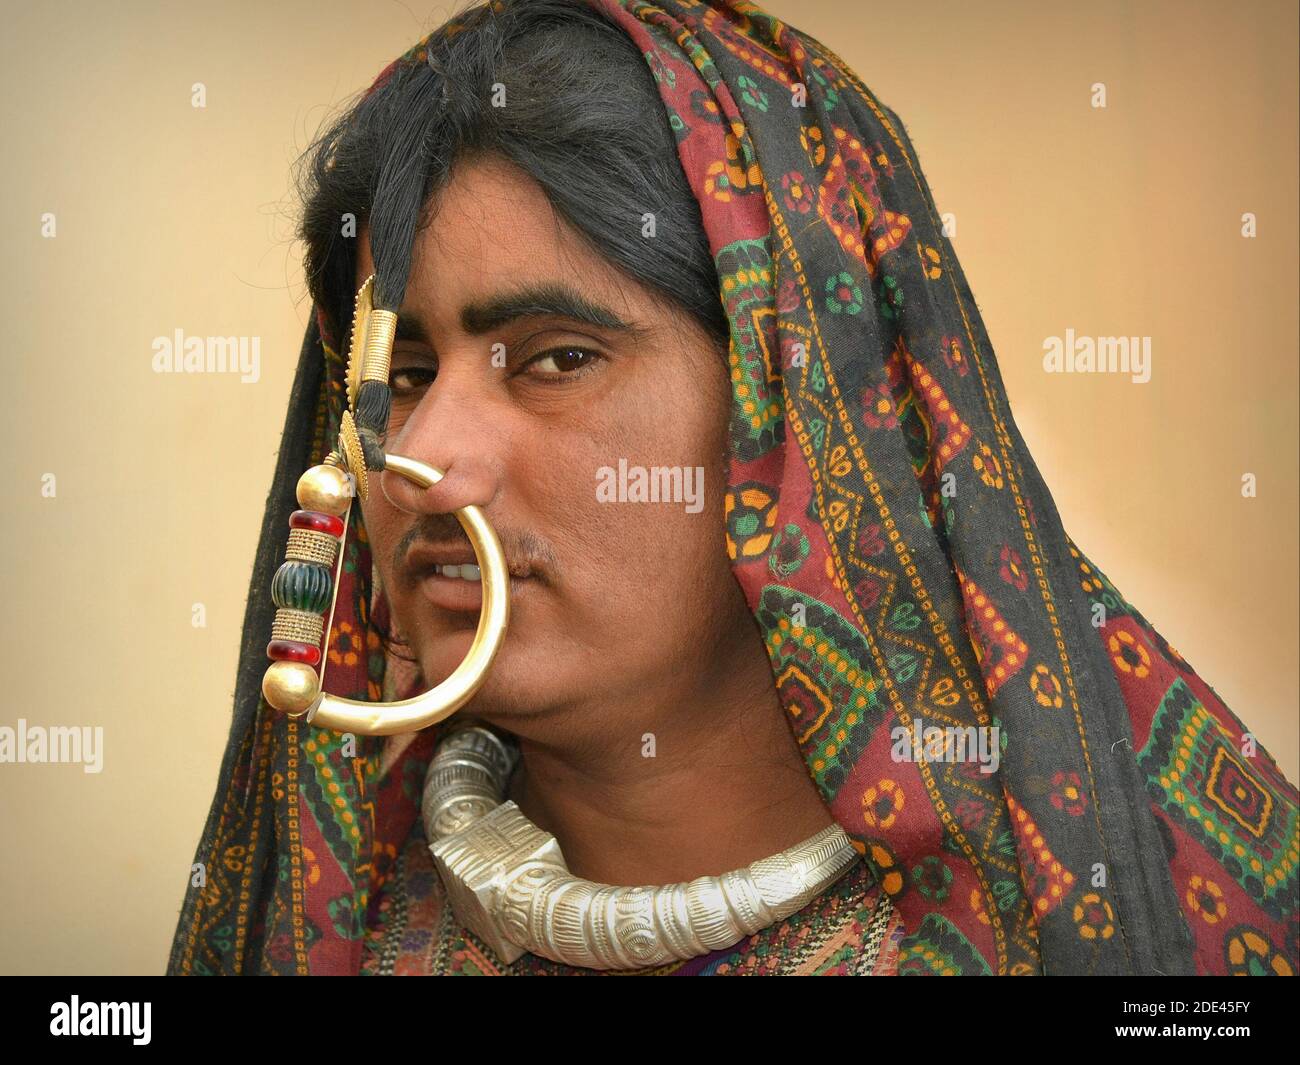 Joven India gujarati Jat mujer tribal (Jats de Kutch) con gran perforación nasal y pesado anillo de nariz posan para la cámara. Foto de stock